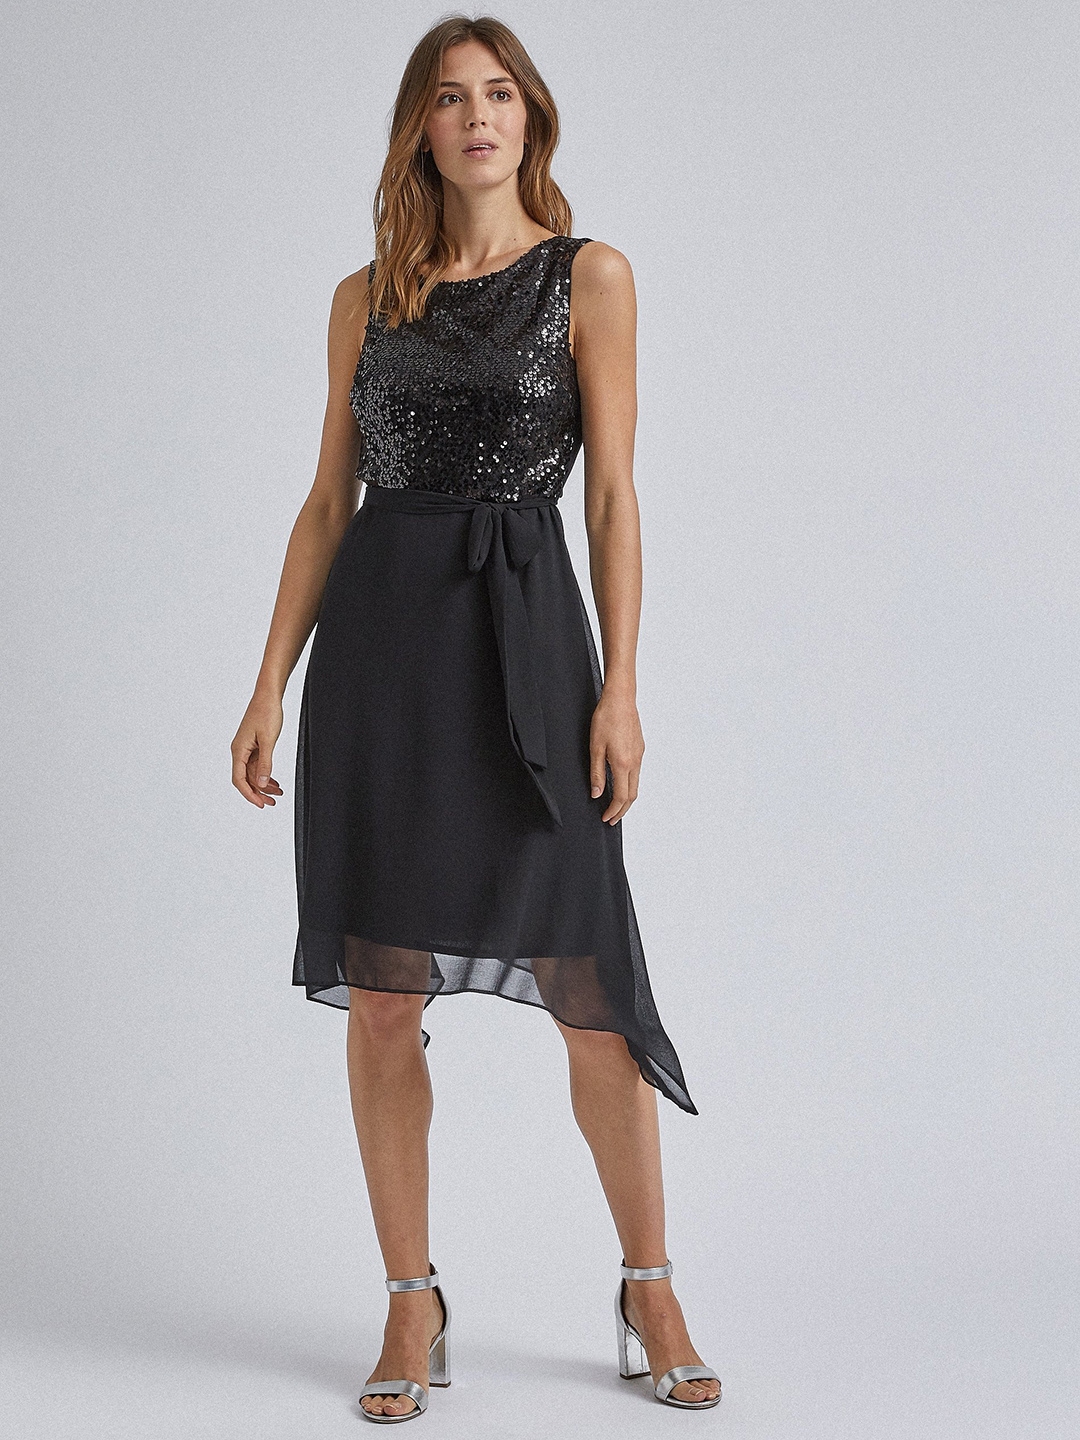 Buy DOROTHY PERKINS Women Black Embellished A Line Dress - Dresses for ...